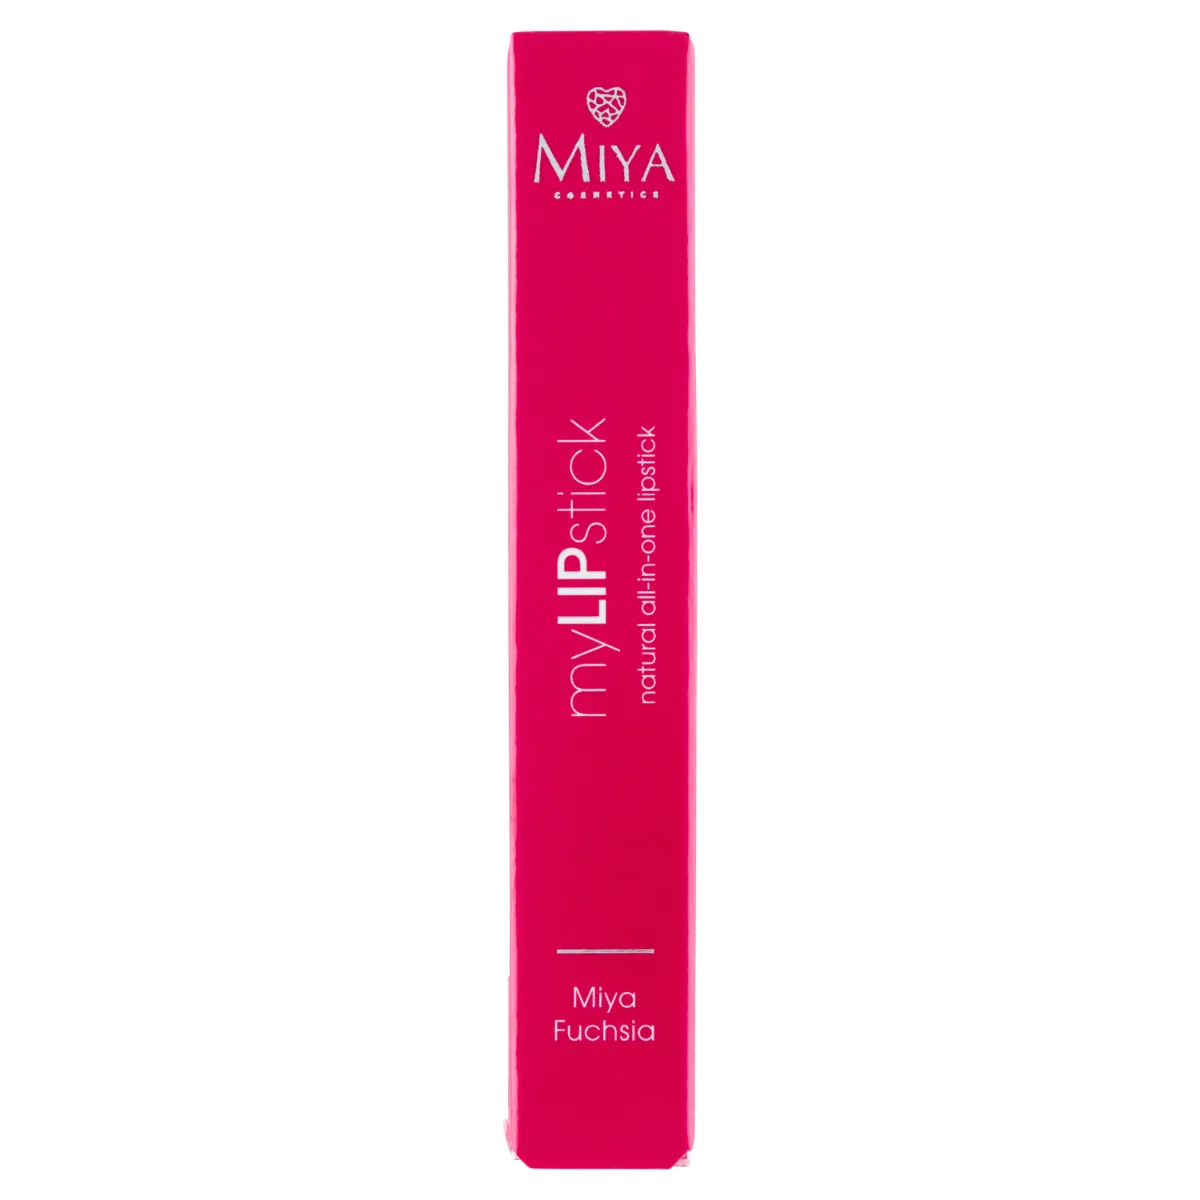 Miya myLIPstick Naturalna pielęgnująca szminka all-in-one Miya Fuchsia, 2,5 g. Data ważności 30.04.2024